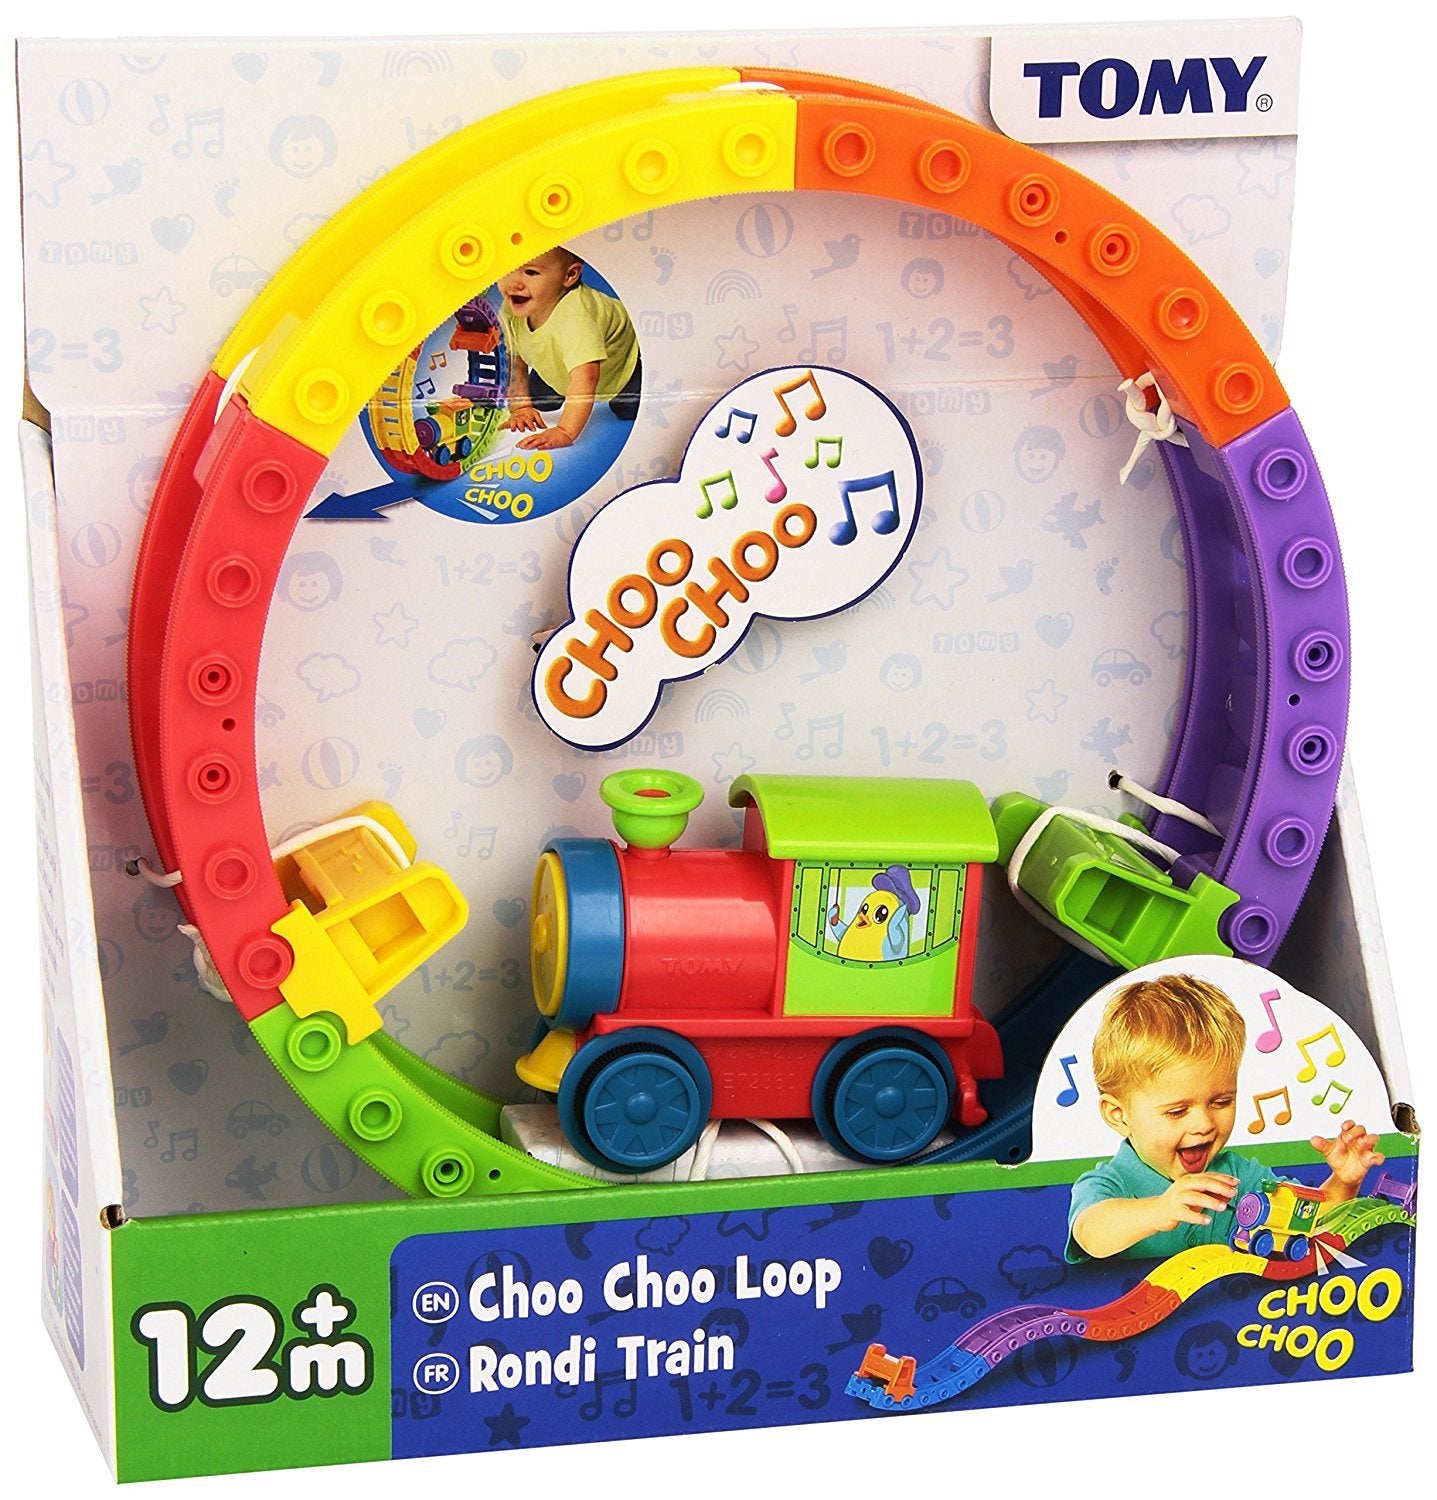 Tomy International E72360 Choo Choo Loop